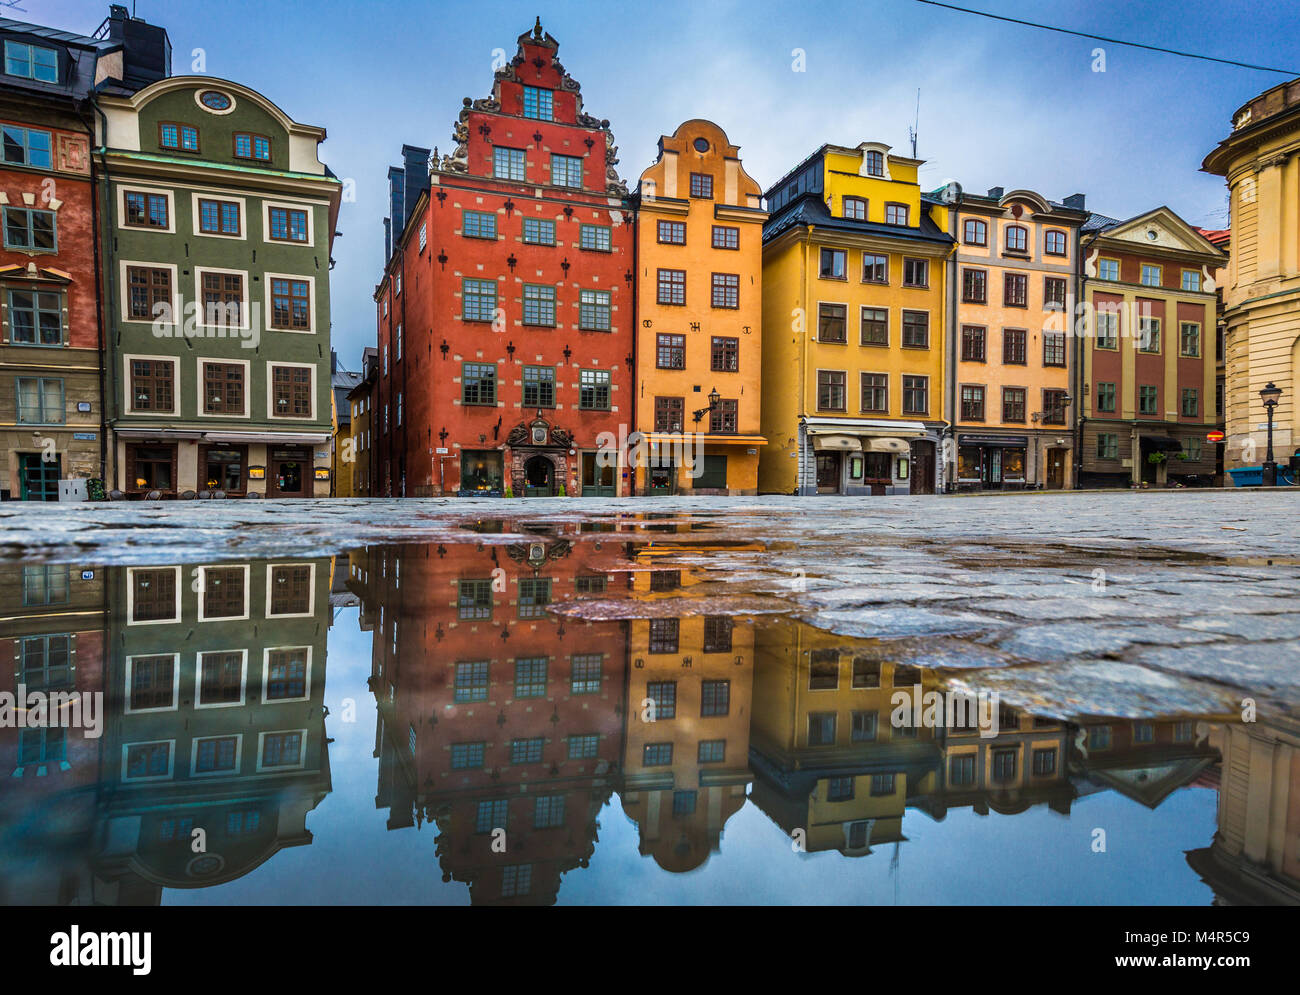 Klassische Ansicht der bunten Häusern an der berühmten stortorget Stadtplatz in der Stockholmer Altstadt Gamla Stan (Altstadt) in einer Pfütze mit blauem Himmel widerspiegelt, c Stockfoto